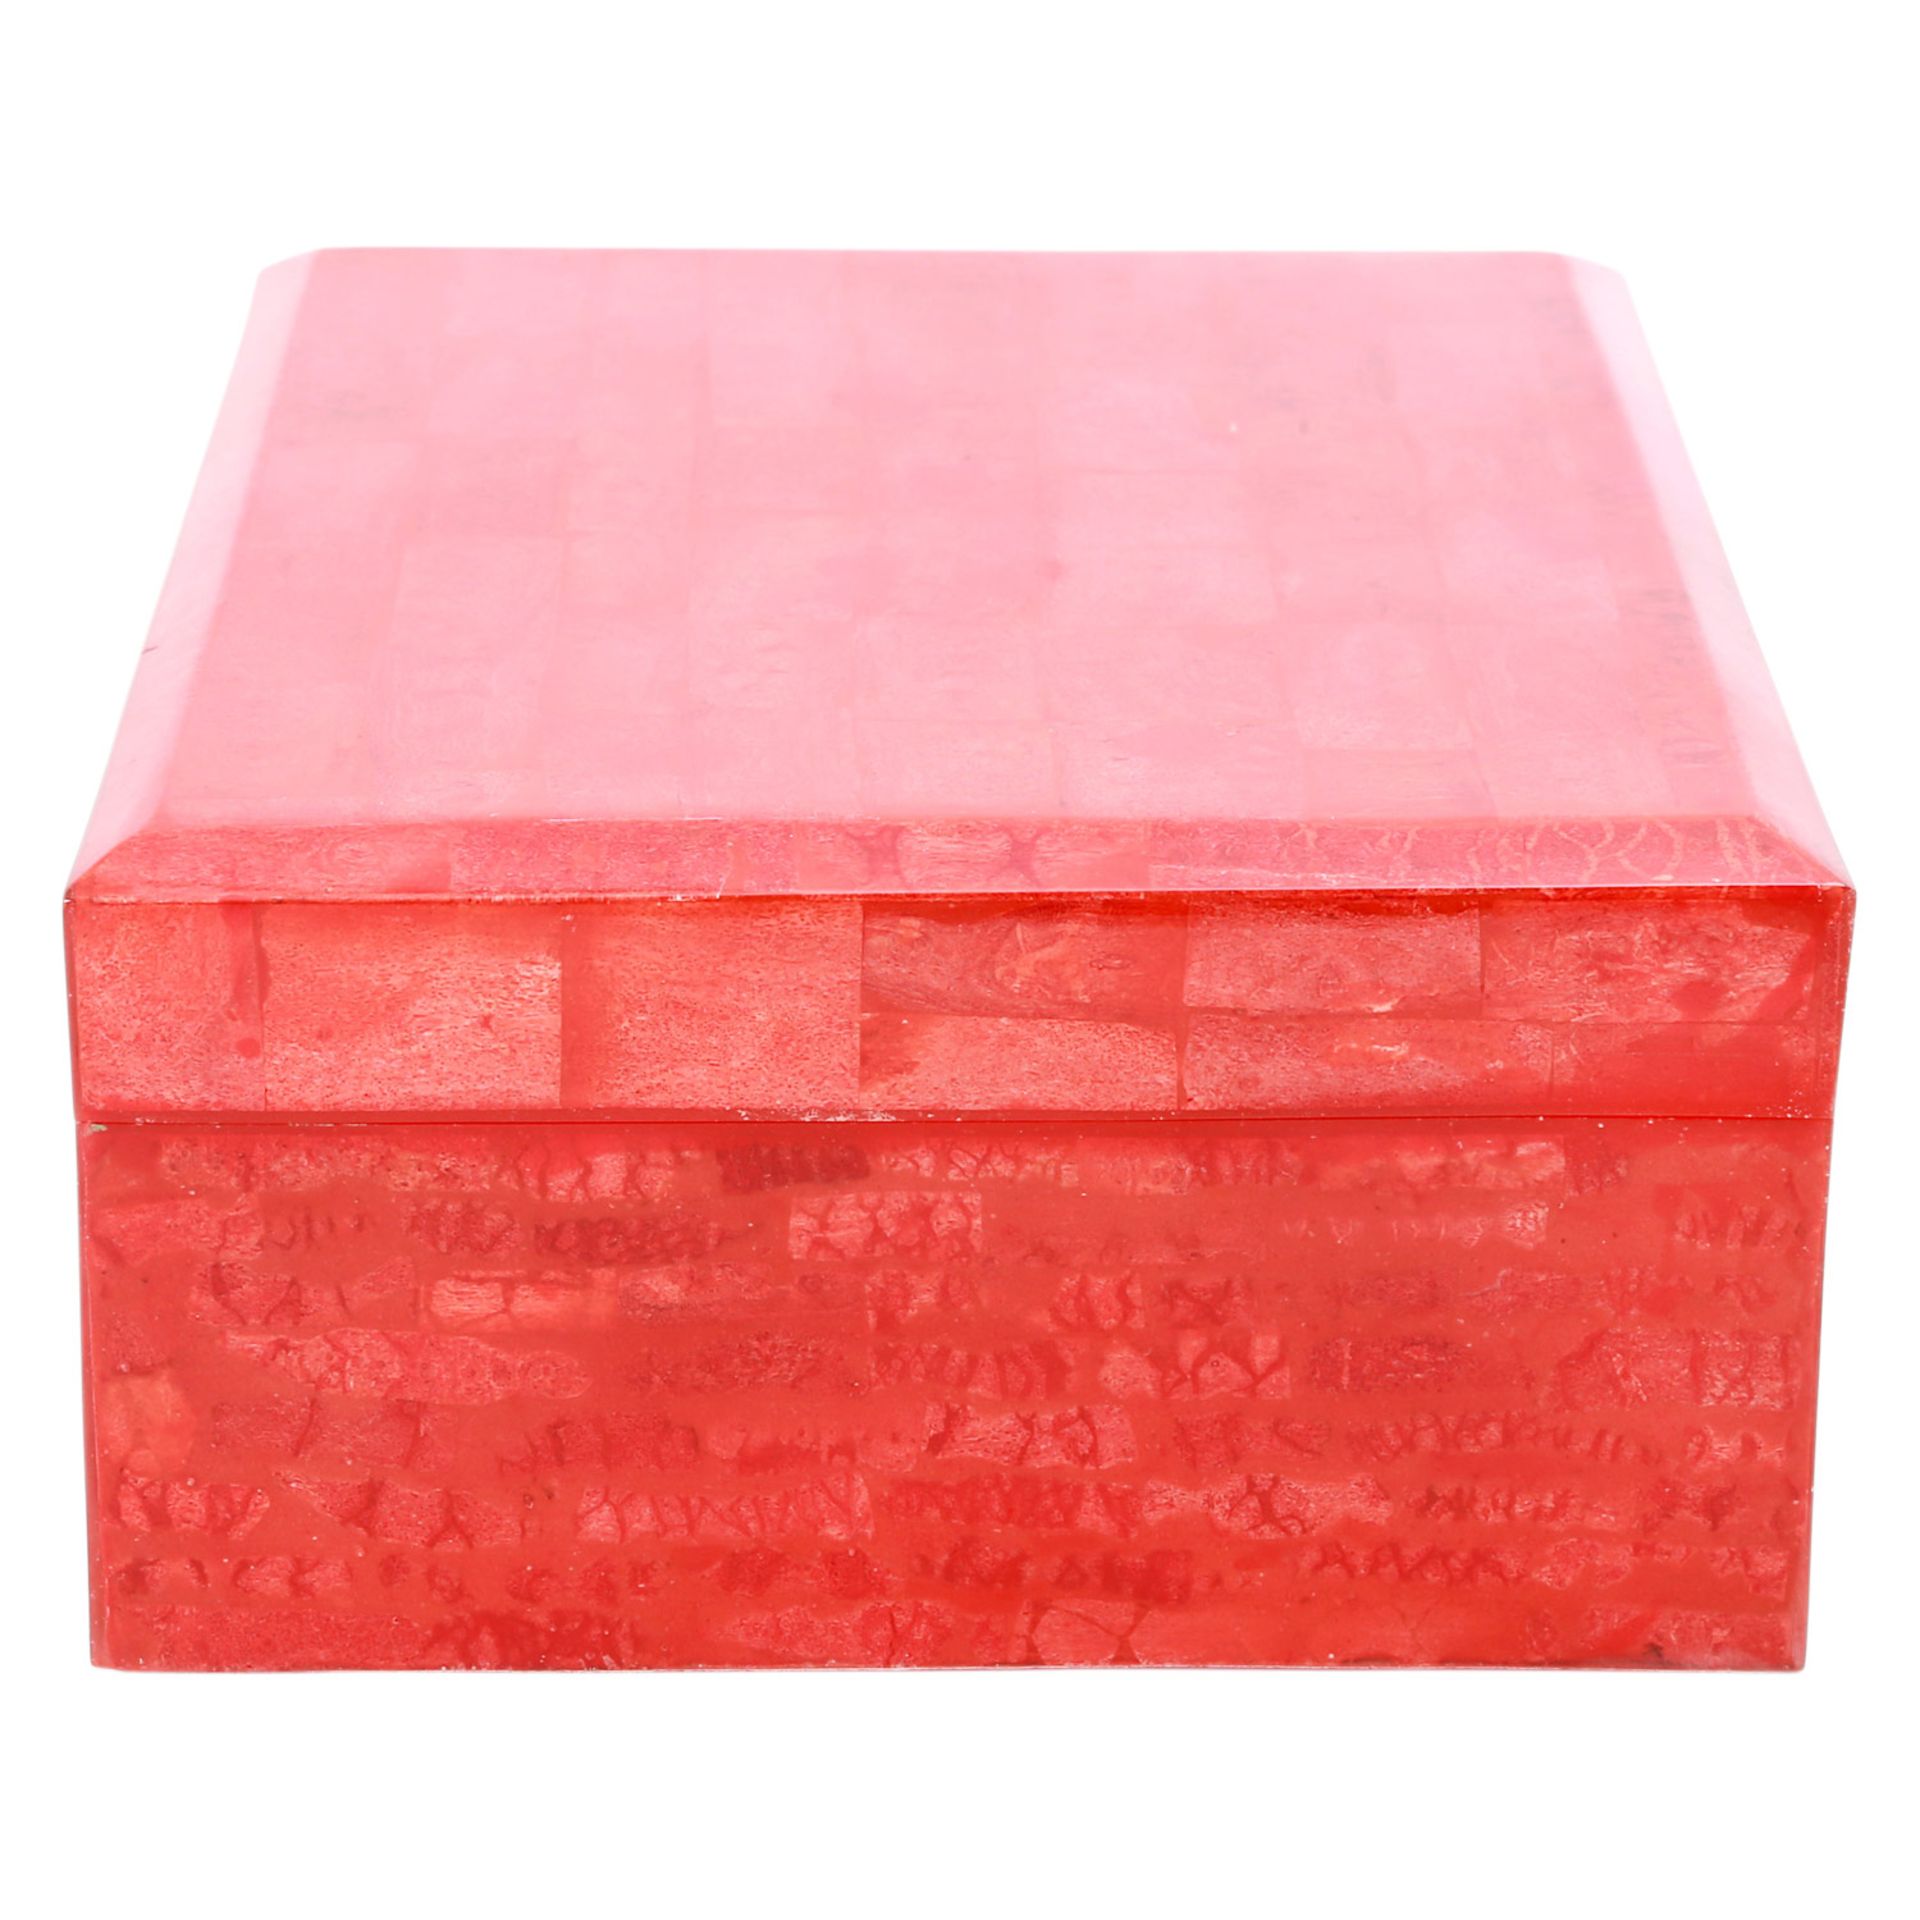 Schmuckkassette. Große Box in Hochglanzlack Rot, marmoriertes Design, rotes Innenfutter, - Bild 3 aus 6